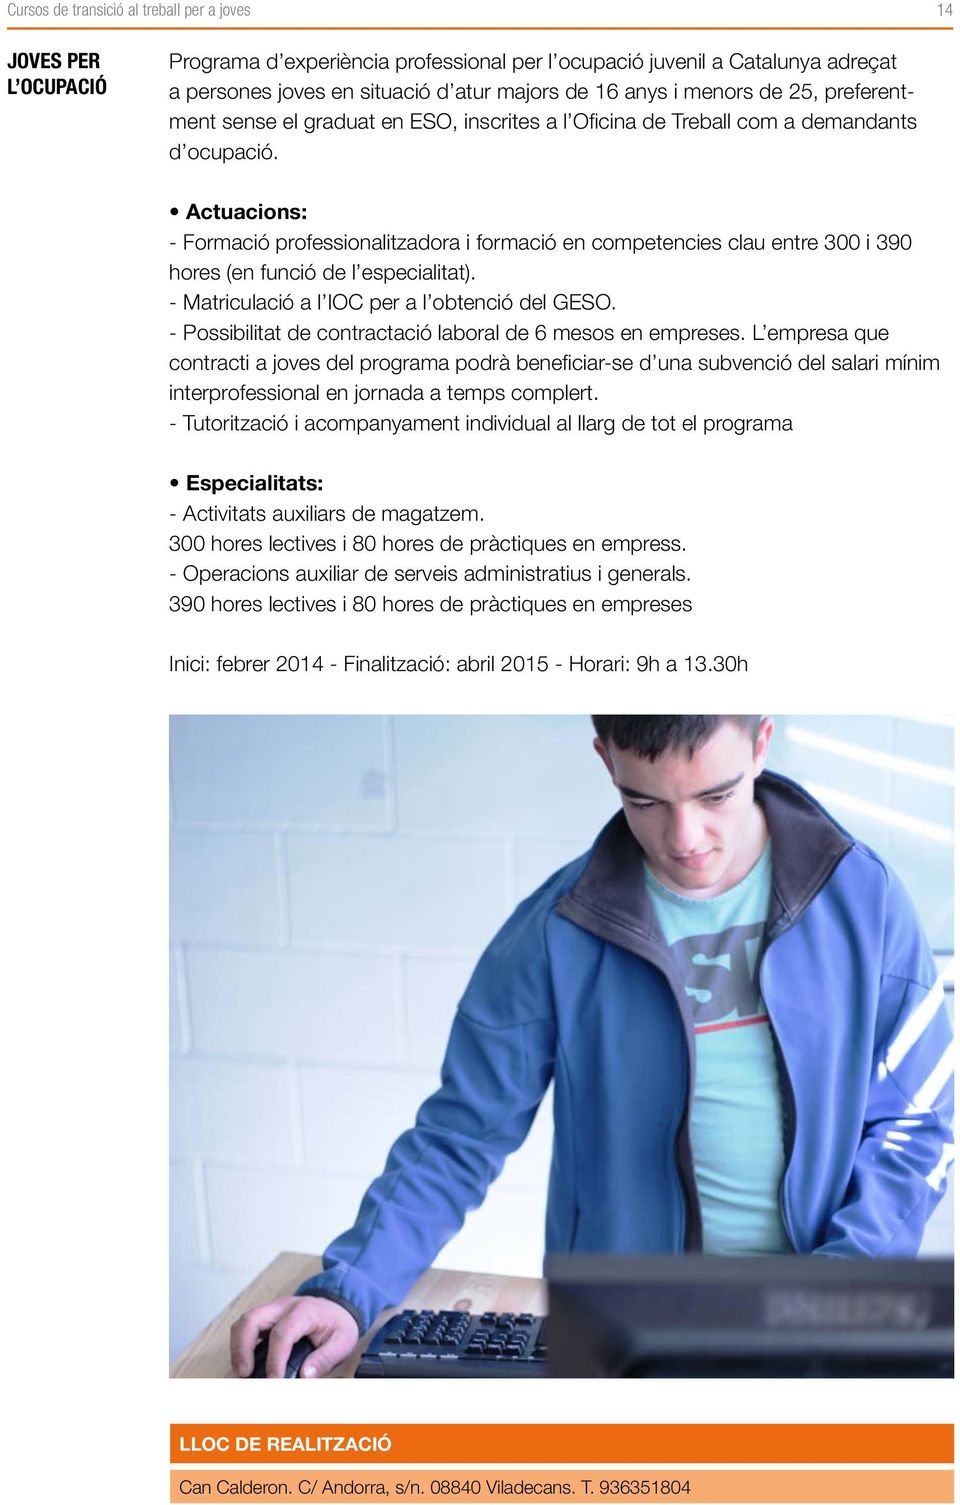 Actuacions: - Formació professionalitzadora i formació en competencies clau entre 300 i 390 hores (en funció de l especialitat). - Matriculació a l IOC per a l obtenció del GESO.